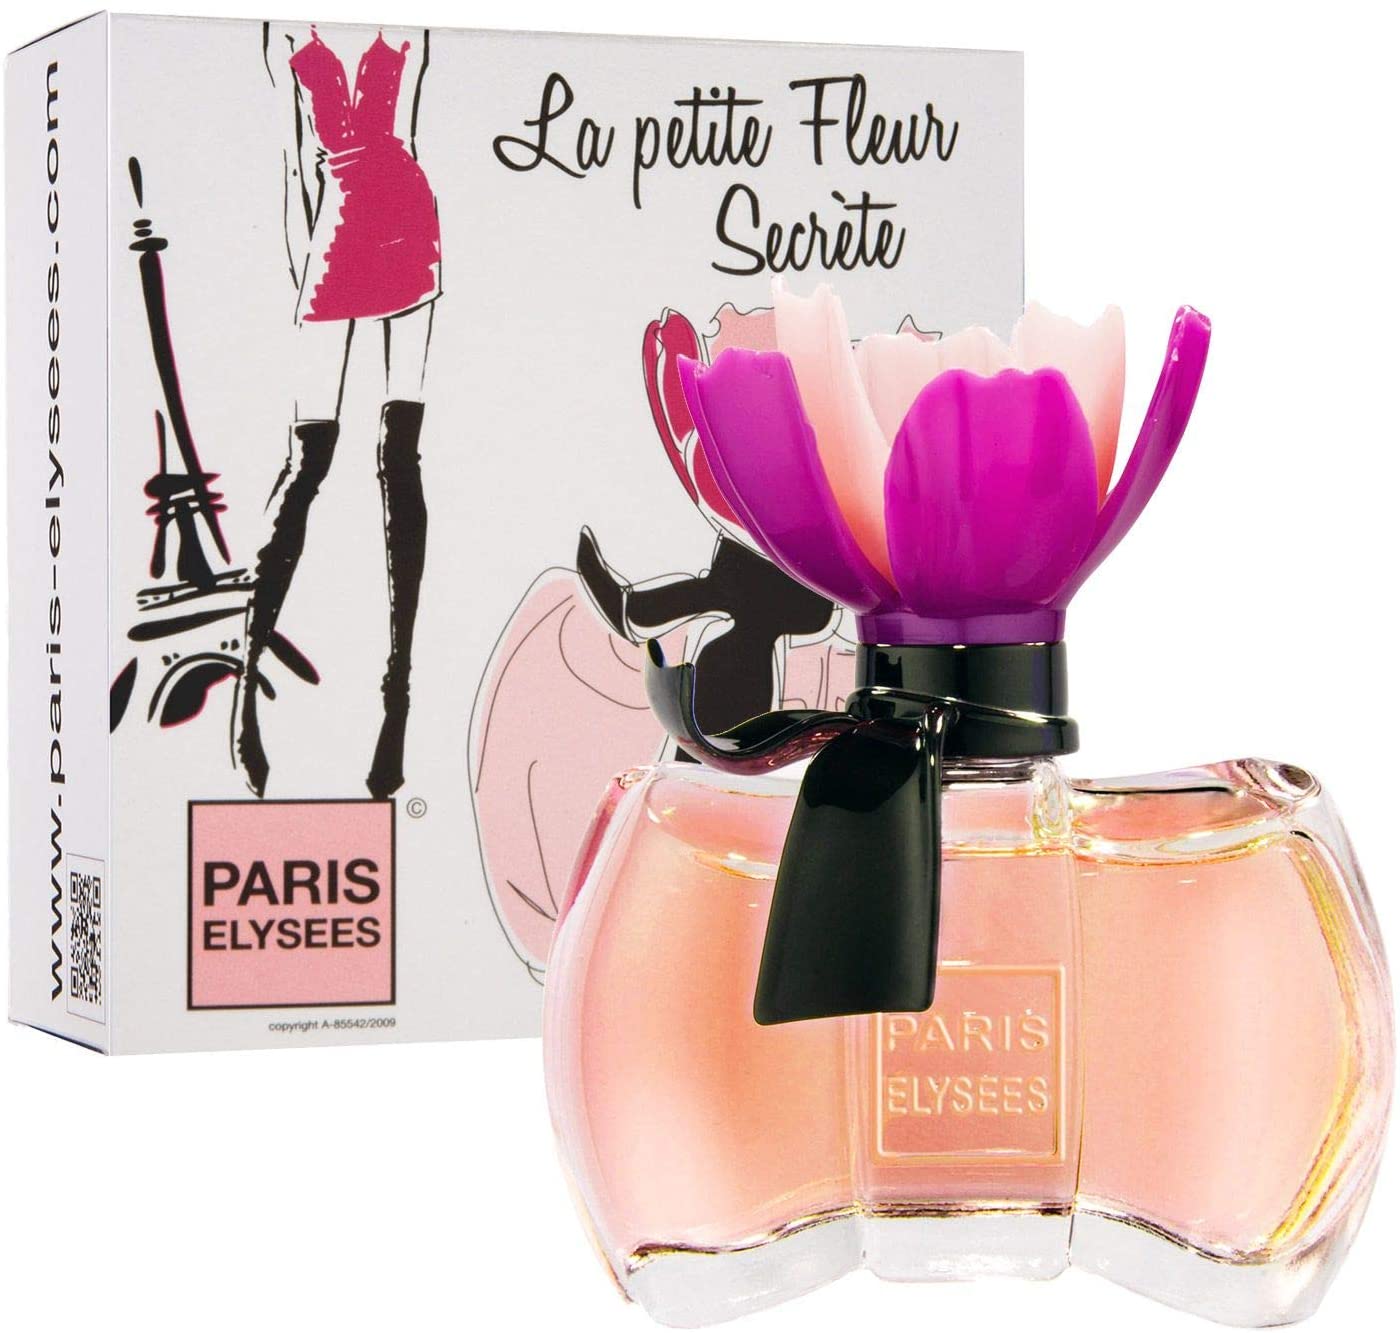 Perfume La Petite Fleur Secrète-  Eau de Toilette 100ml - Paris Elysees